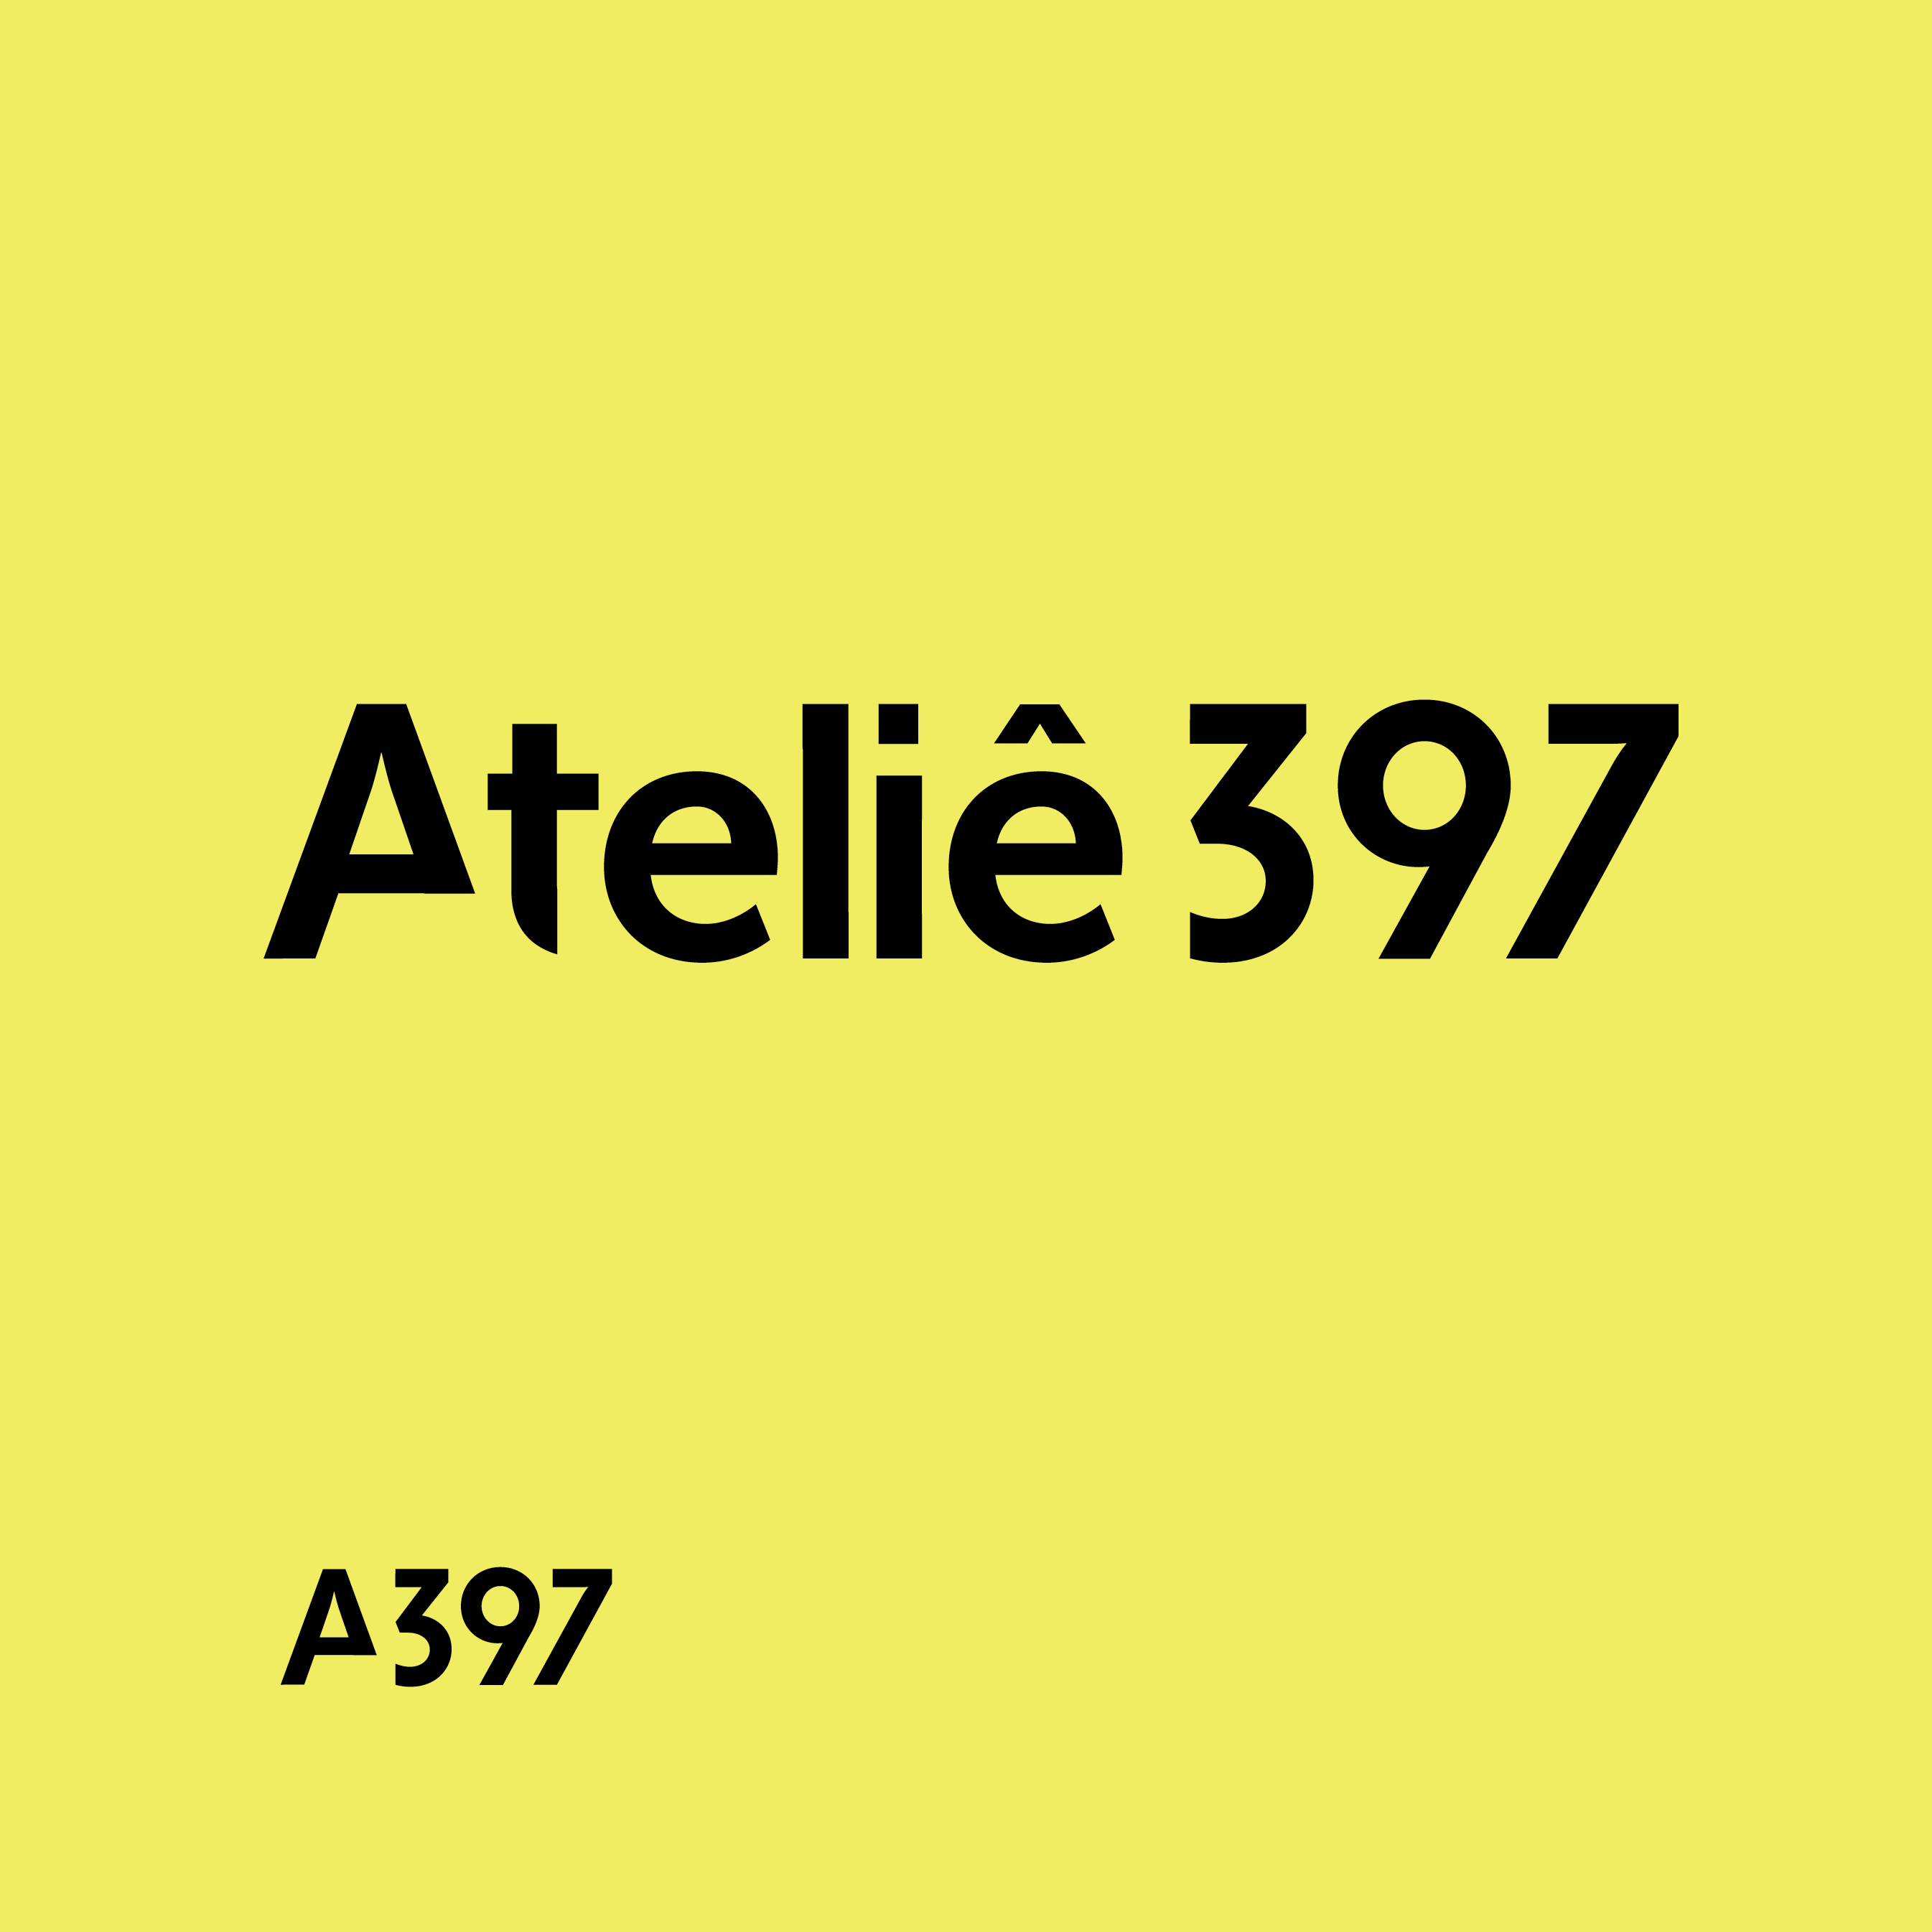 Ateliê 397